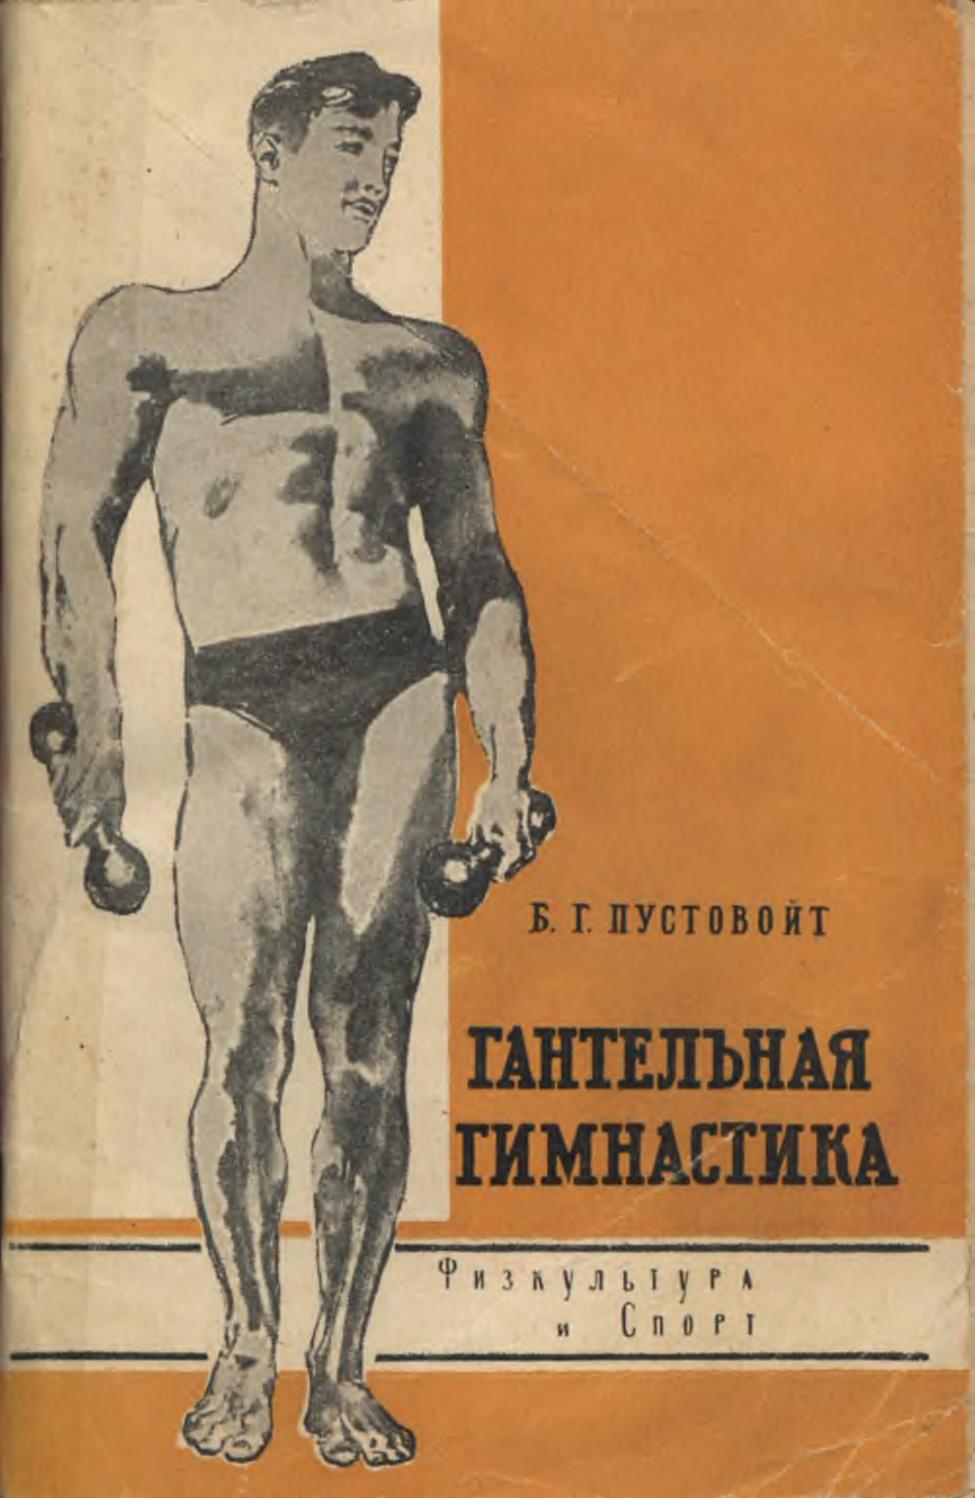 Пустовойт Б.Г. - Гантельная гимнастика (Изд. 5-е) - 1965 ссср